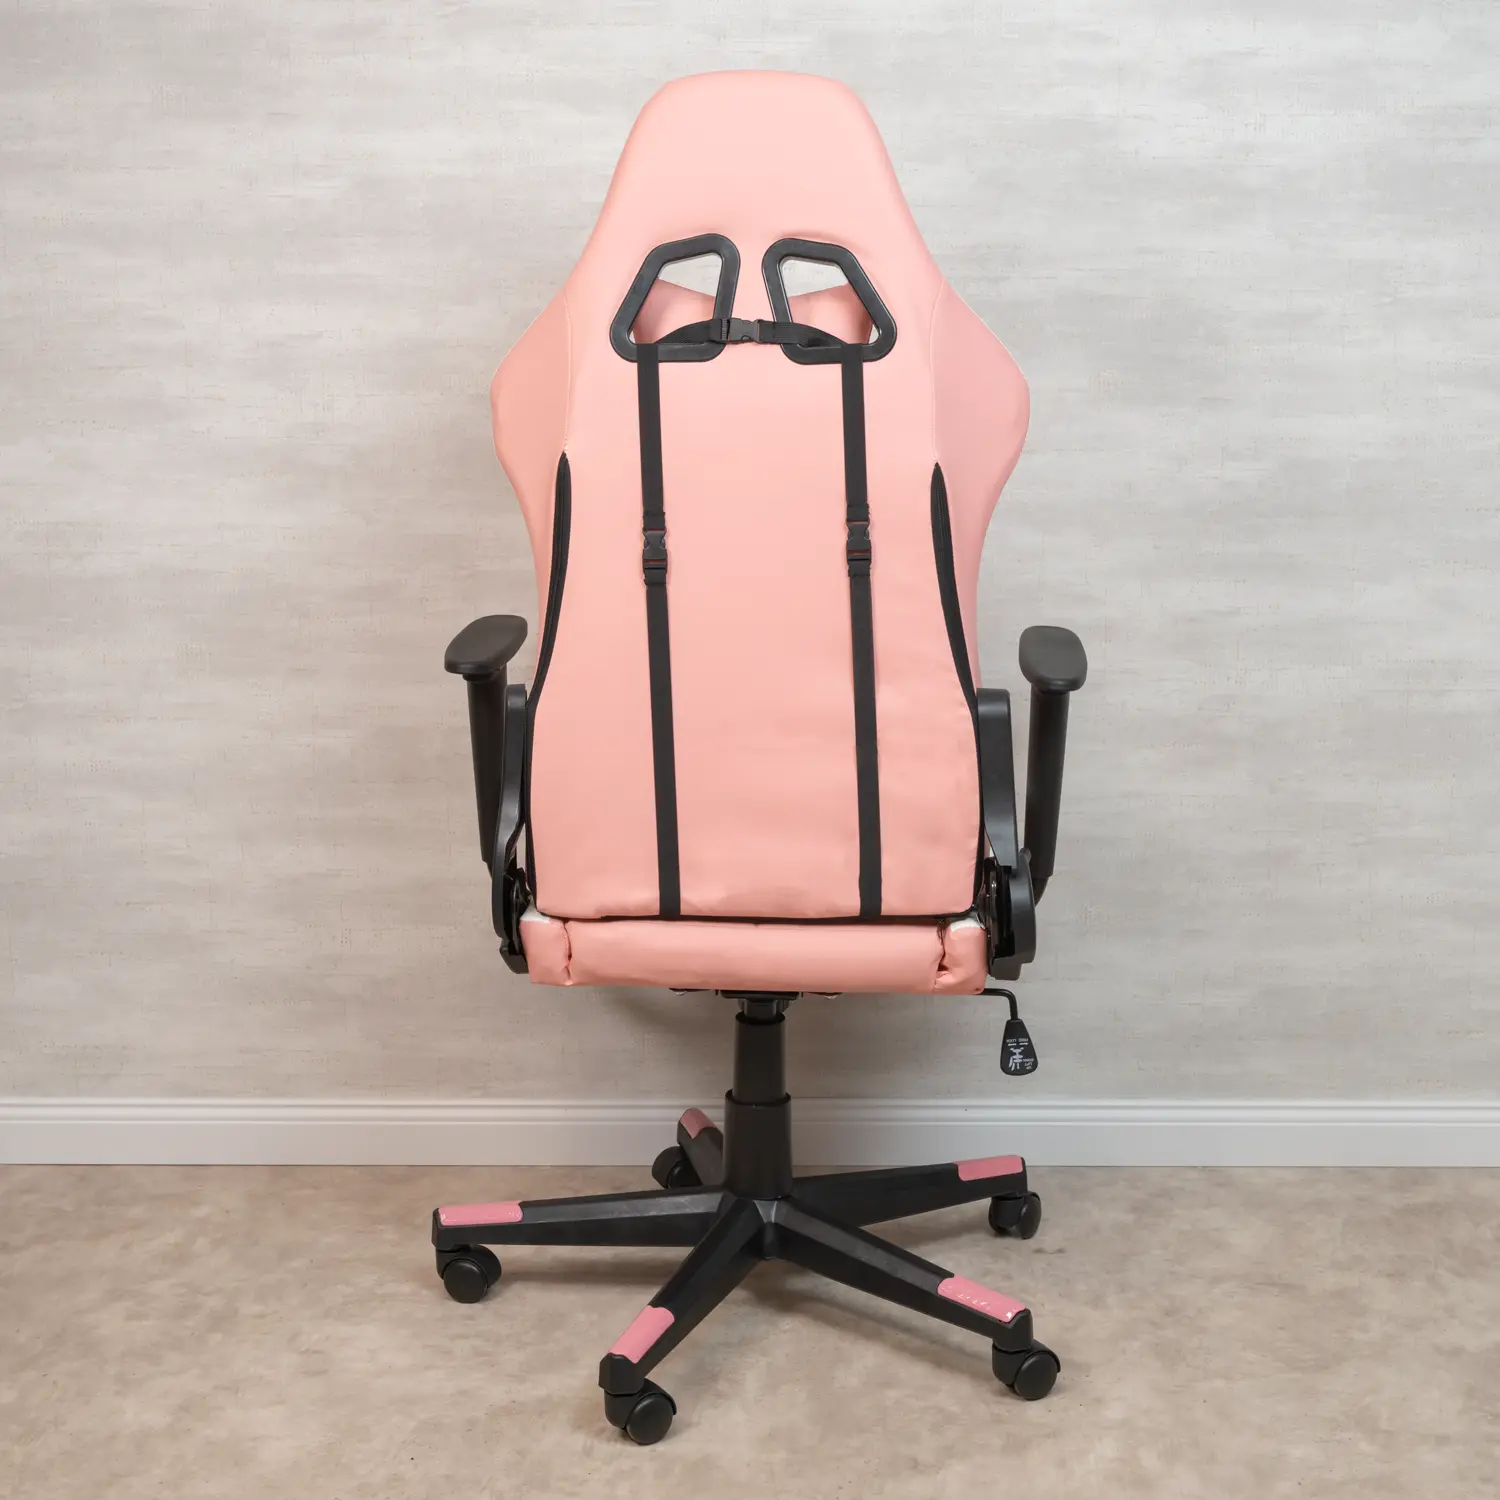 Warrior gamer szék, forgószék rózsaszín-fehér (GAMER-ARROW-PINK)